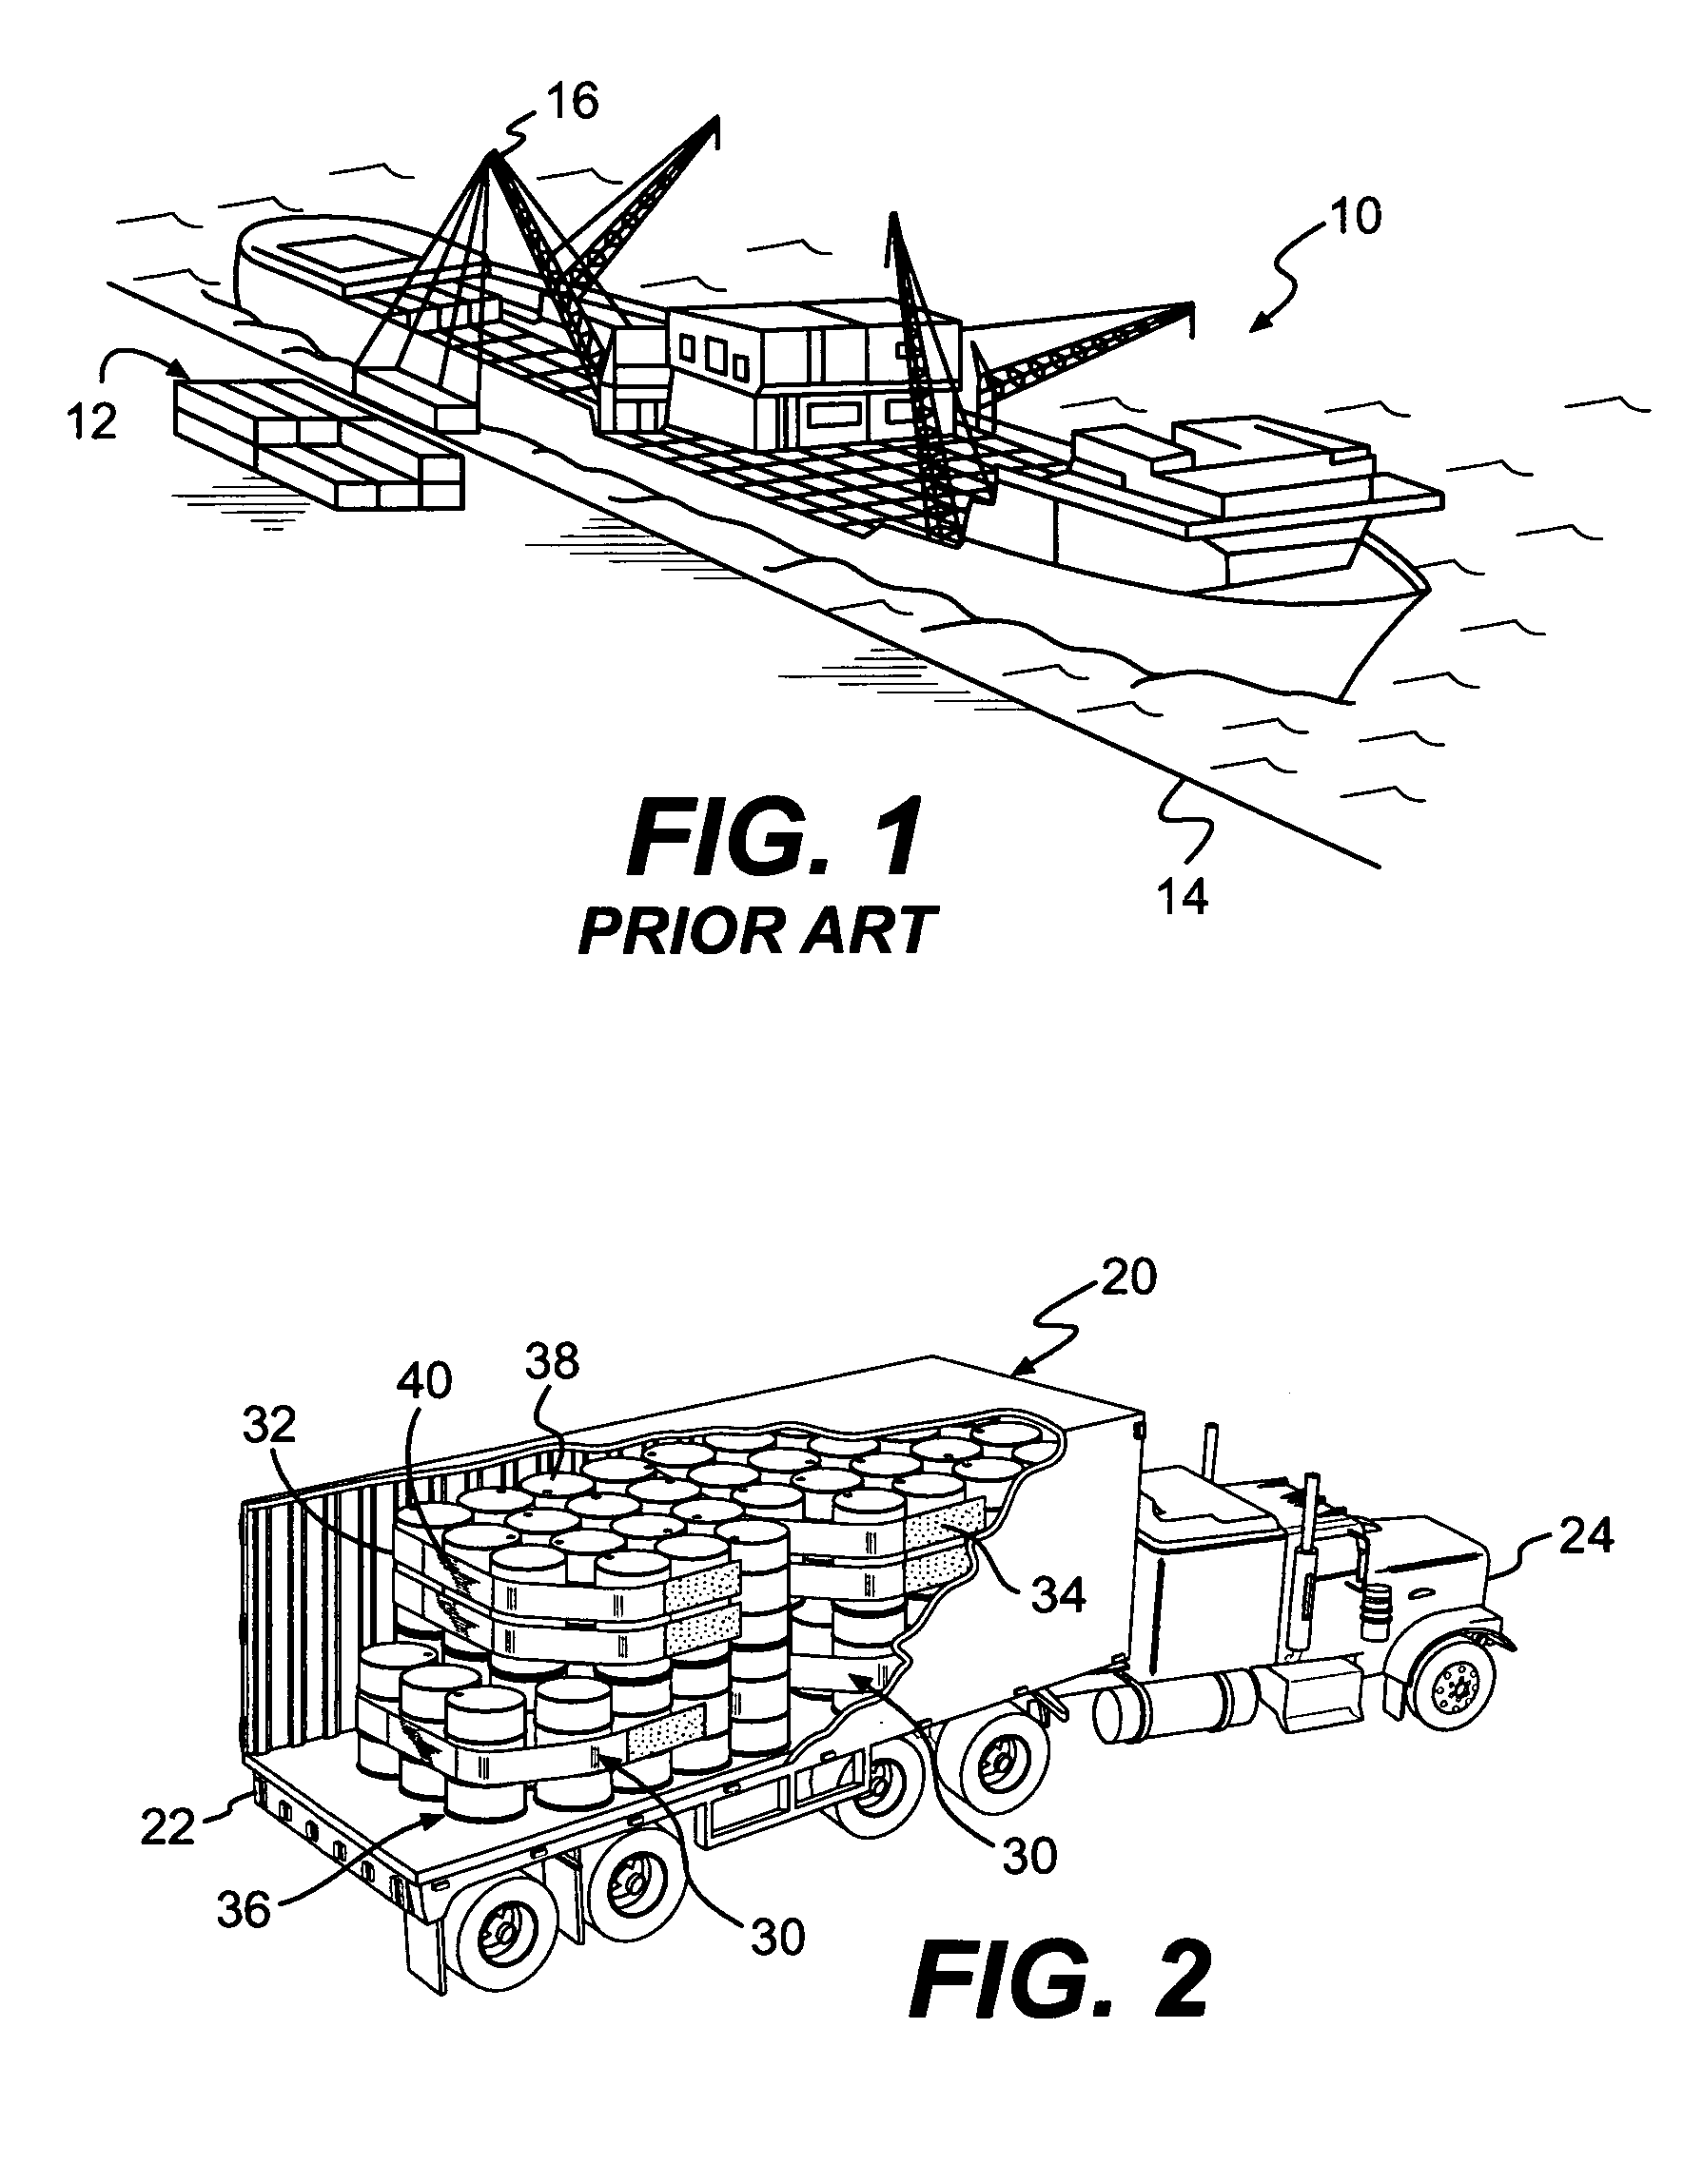 Cross-weave cargo restraint system